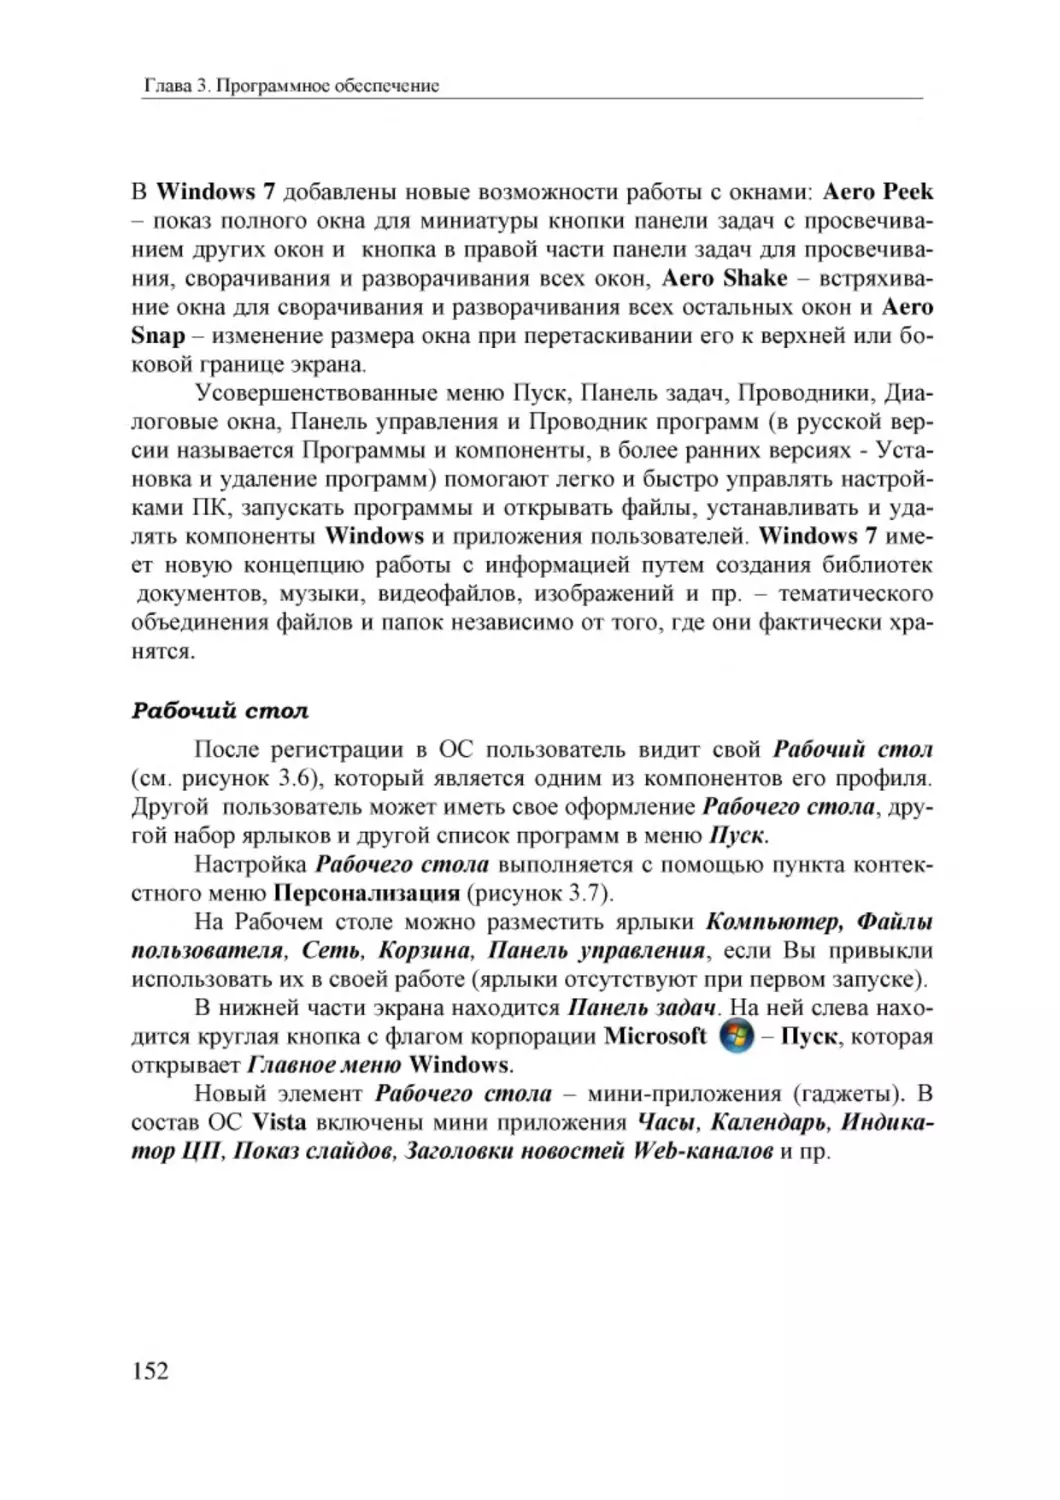 Informatika_Uchebnik_dlya_vuzov_2010 152